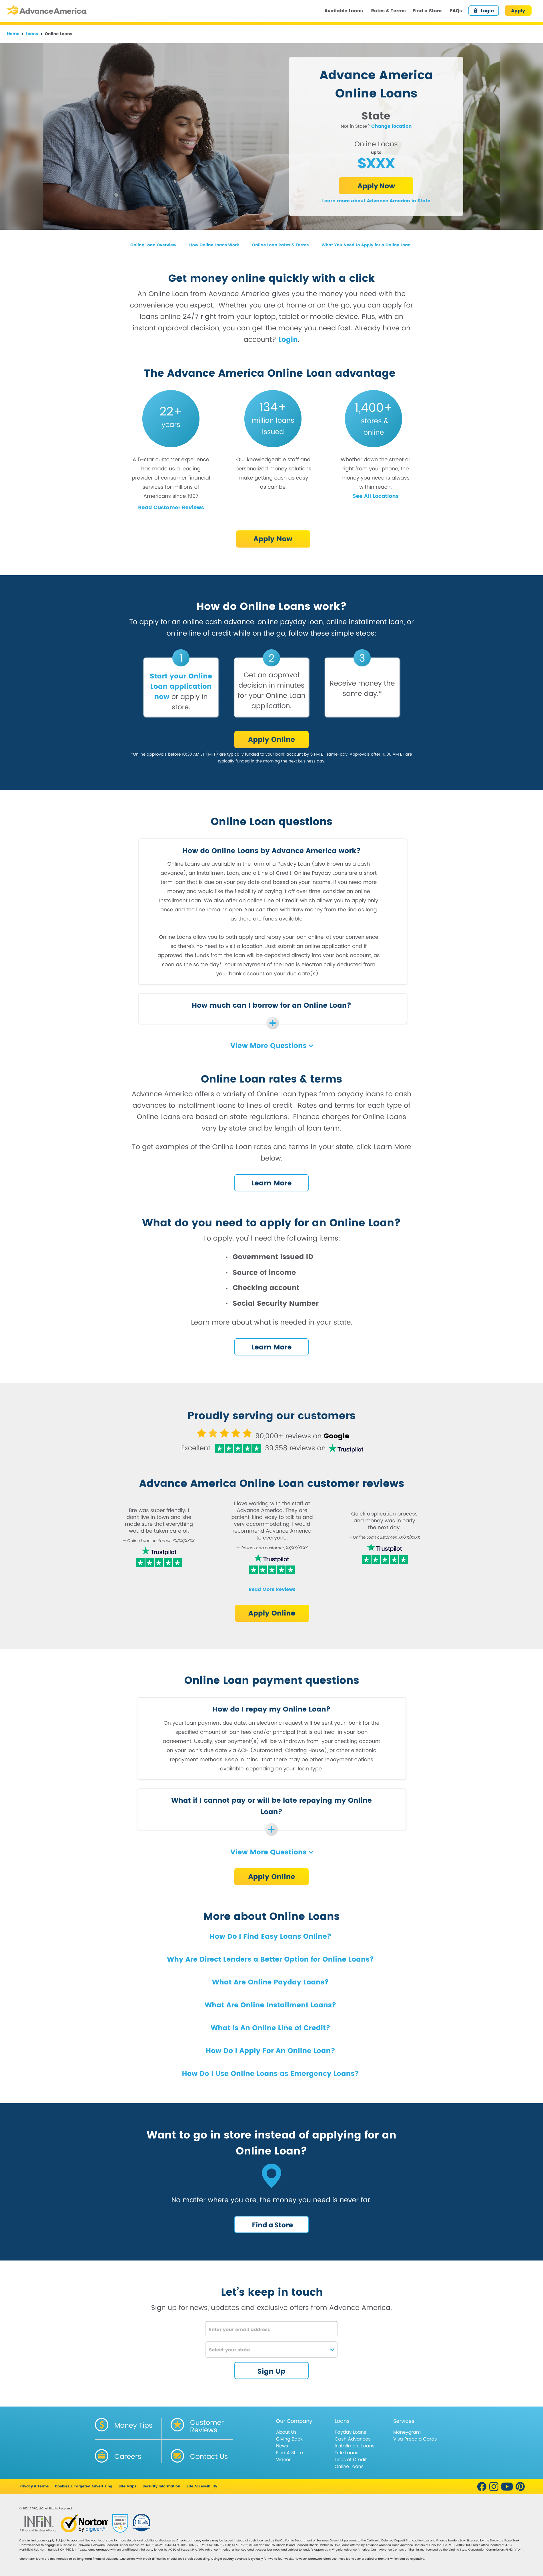 Advance America Corporate Site Redesign